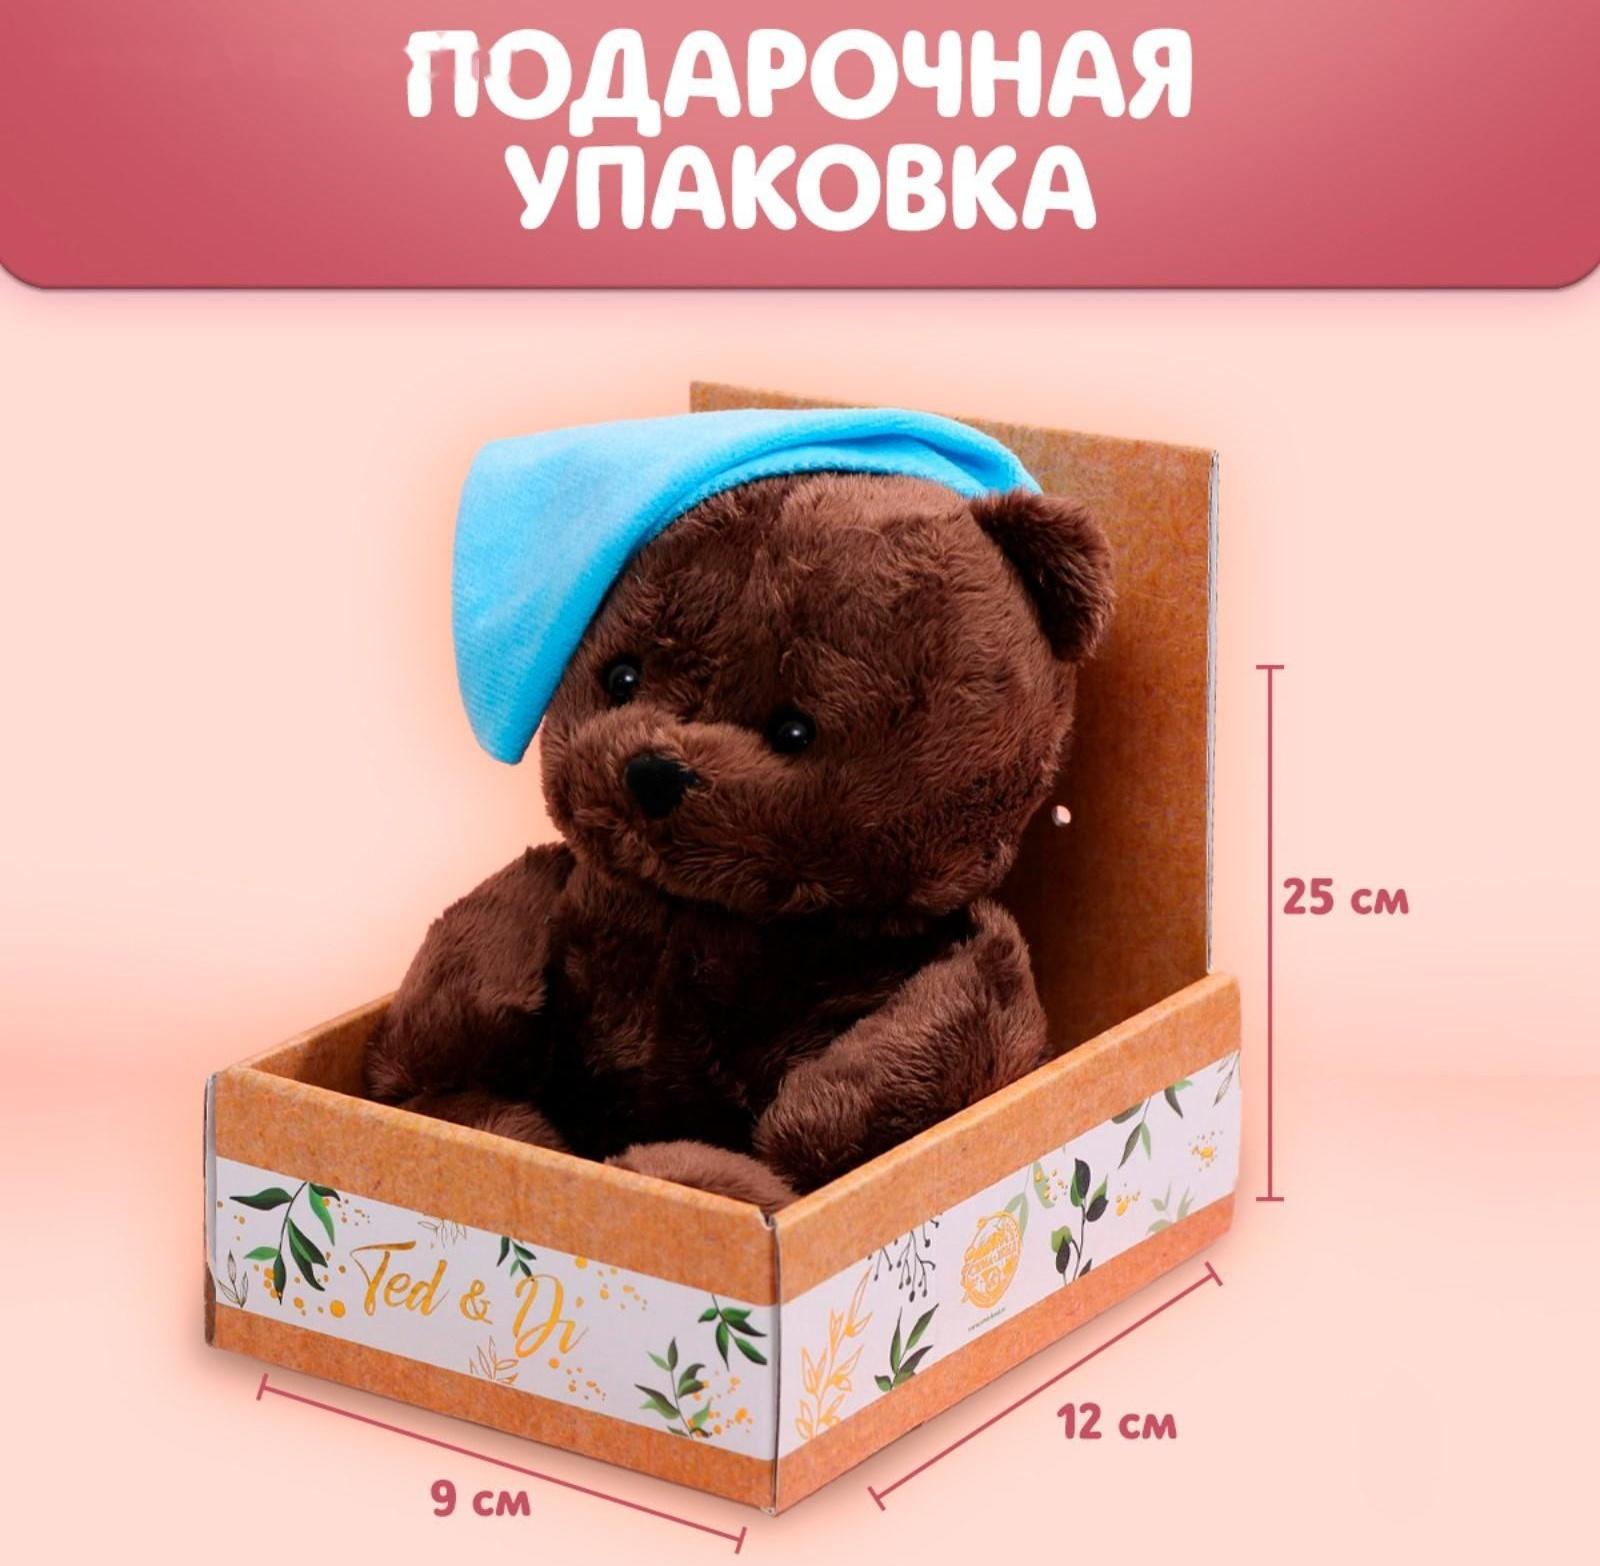 Мягкая игрушка «Малыш Ted» мишка, 25 см